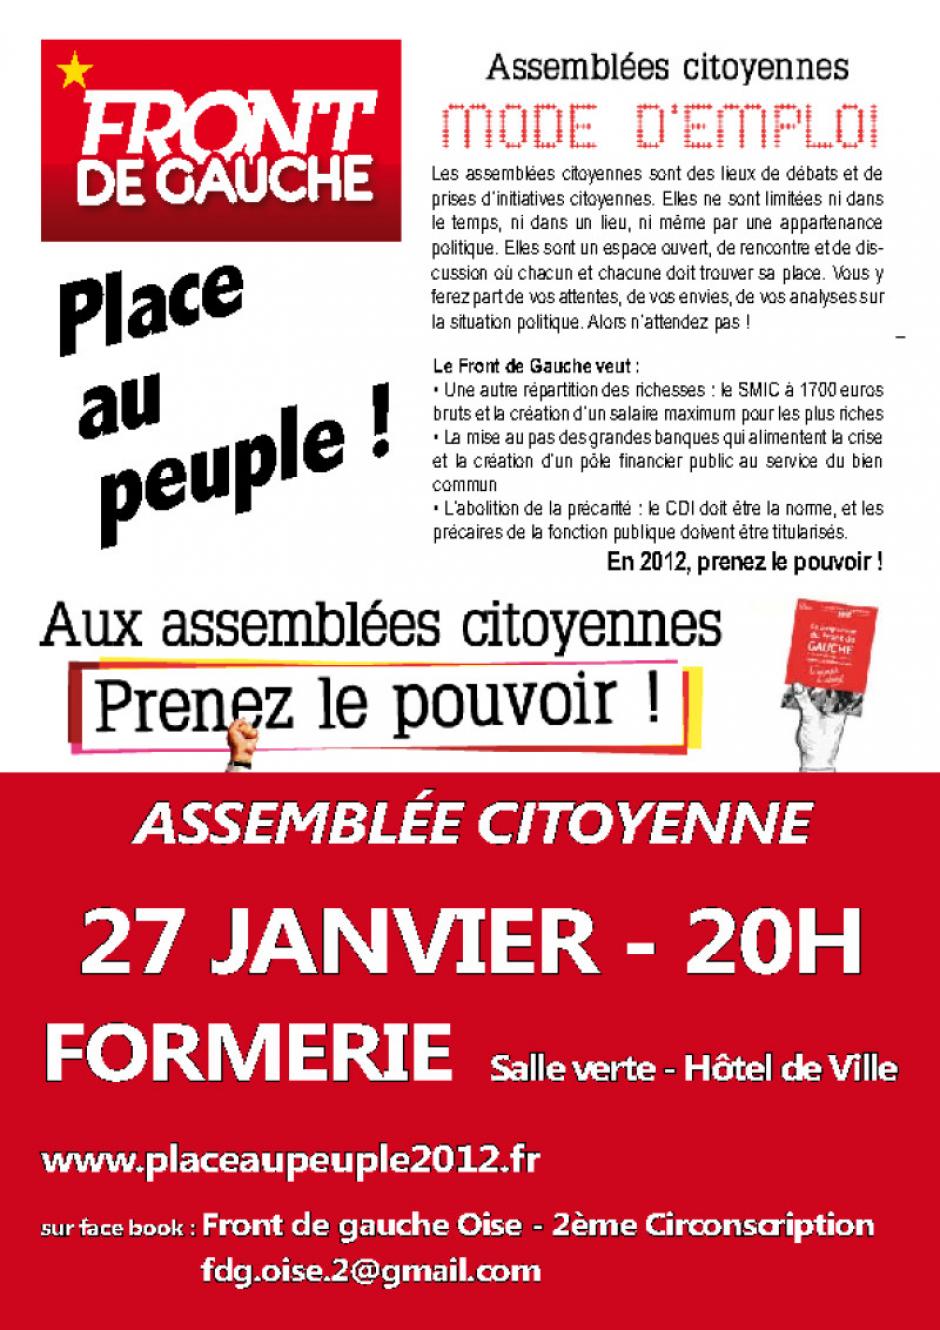 27 janvier, Formerie - Assemblée citoyenne du Front de gauche